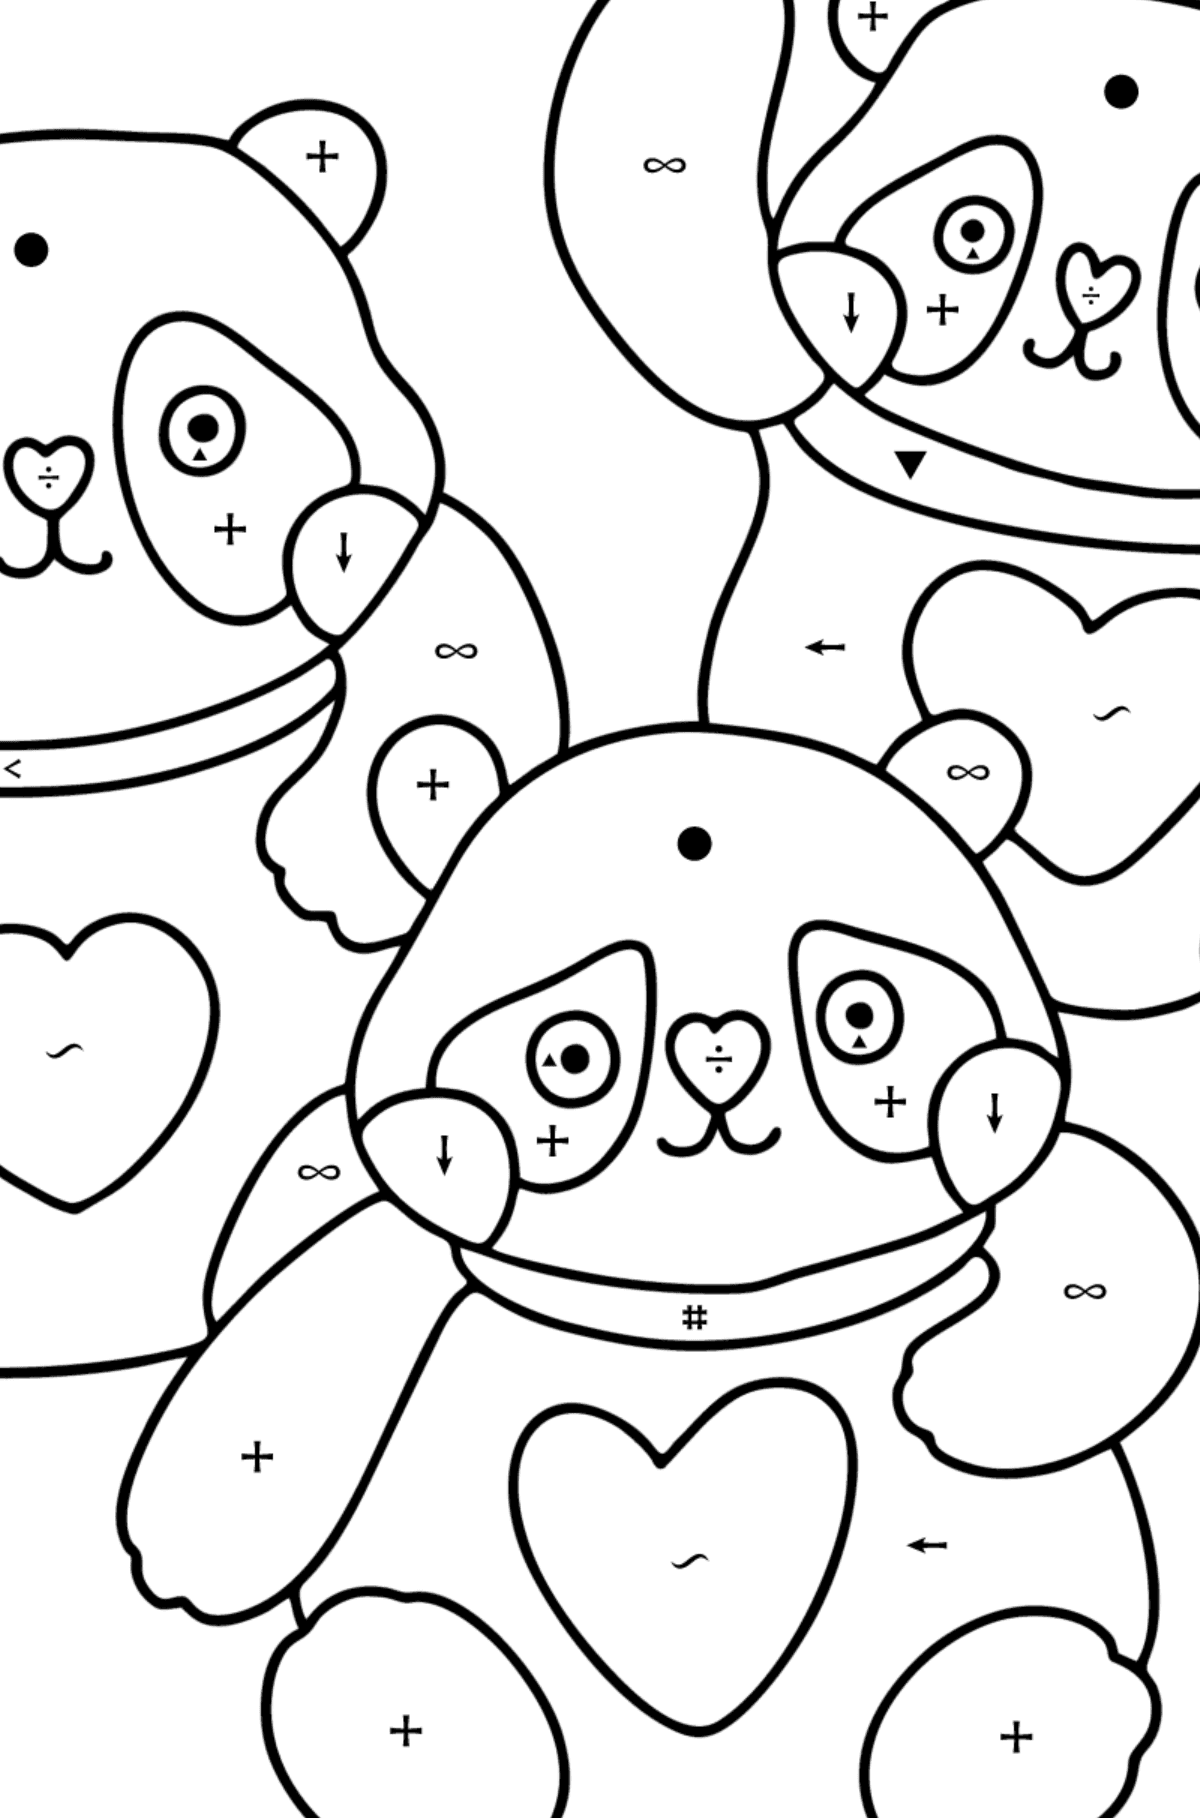 Kolorowanka kawaii pandy - Kolorowanie według symboli dla dzieci